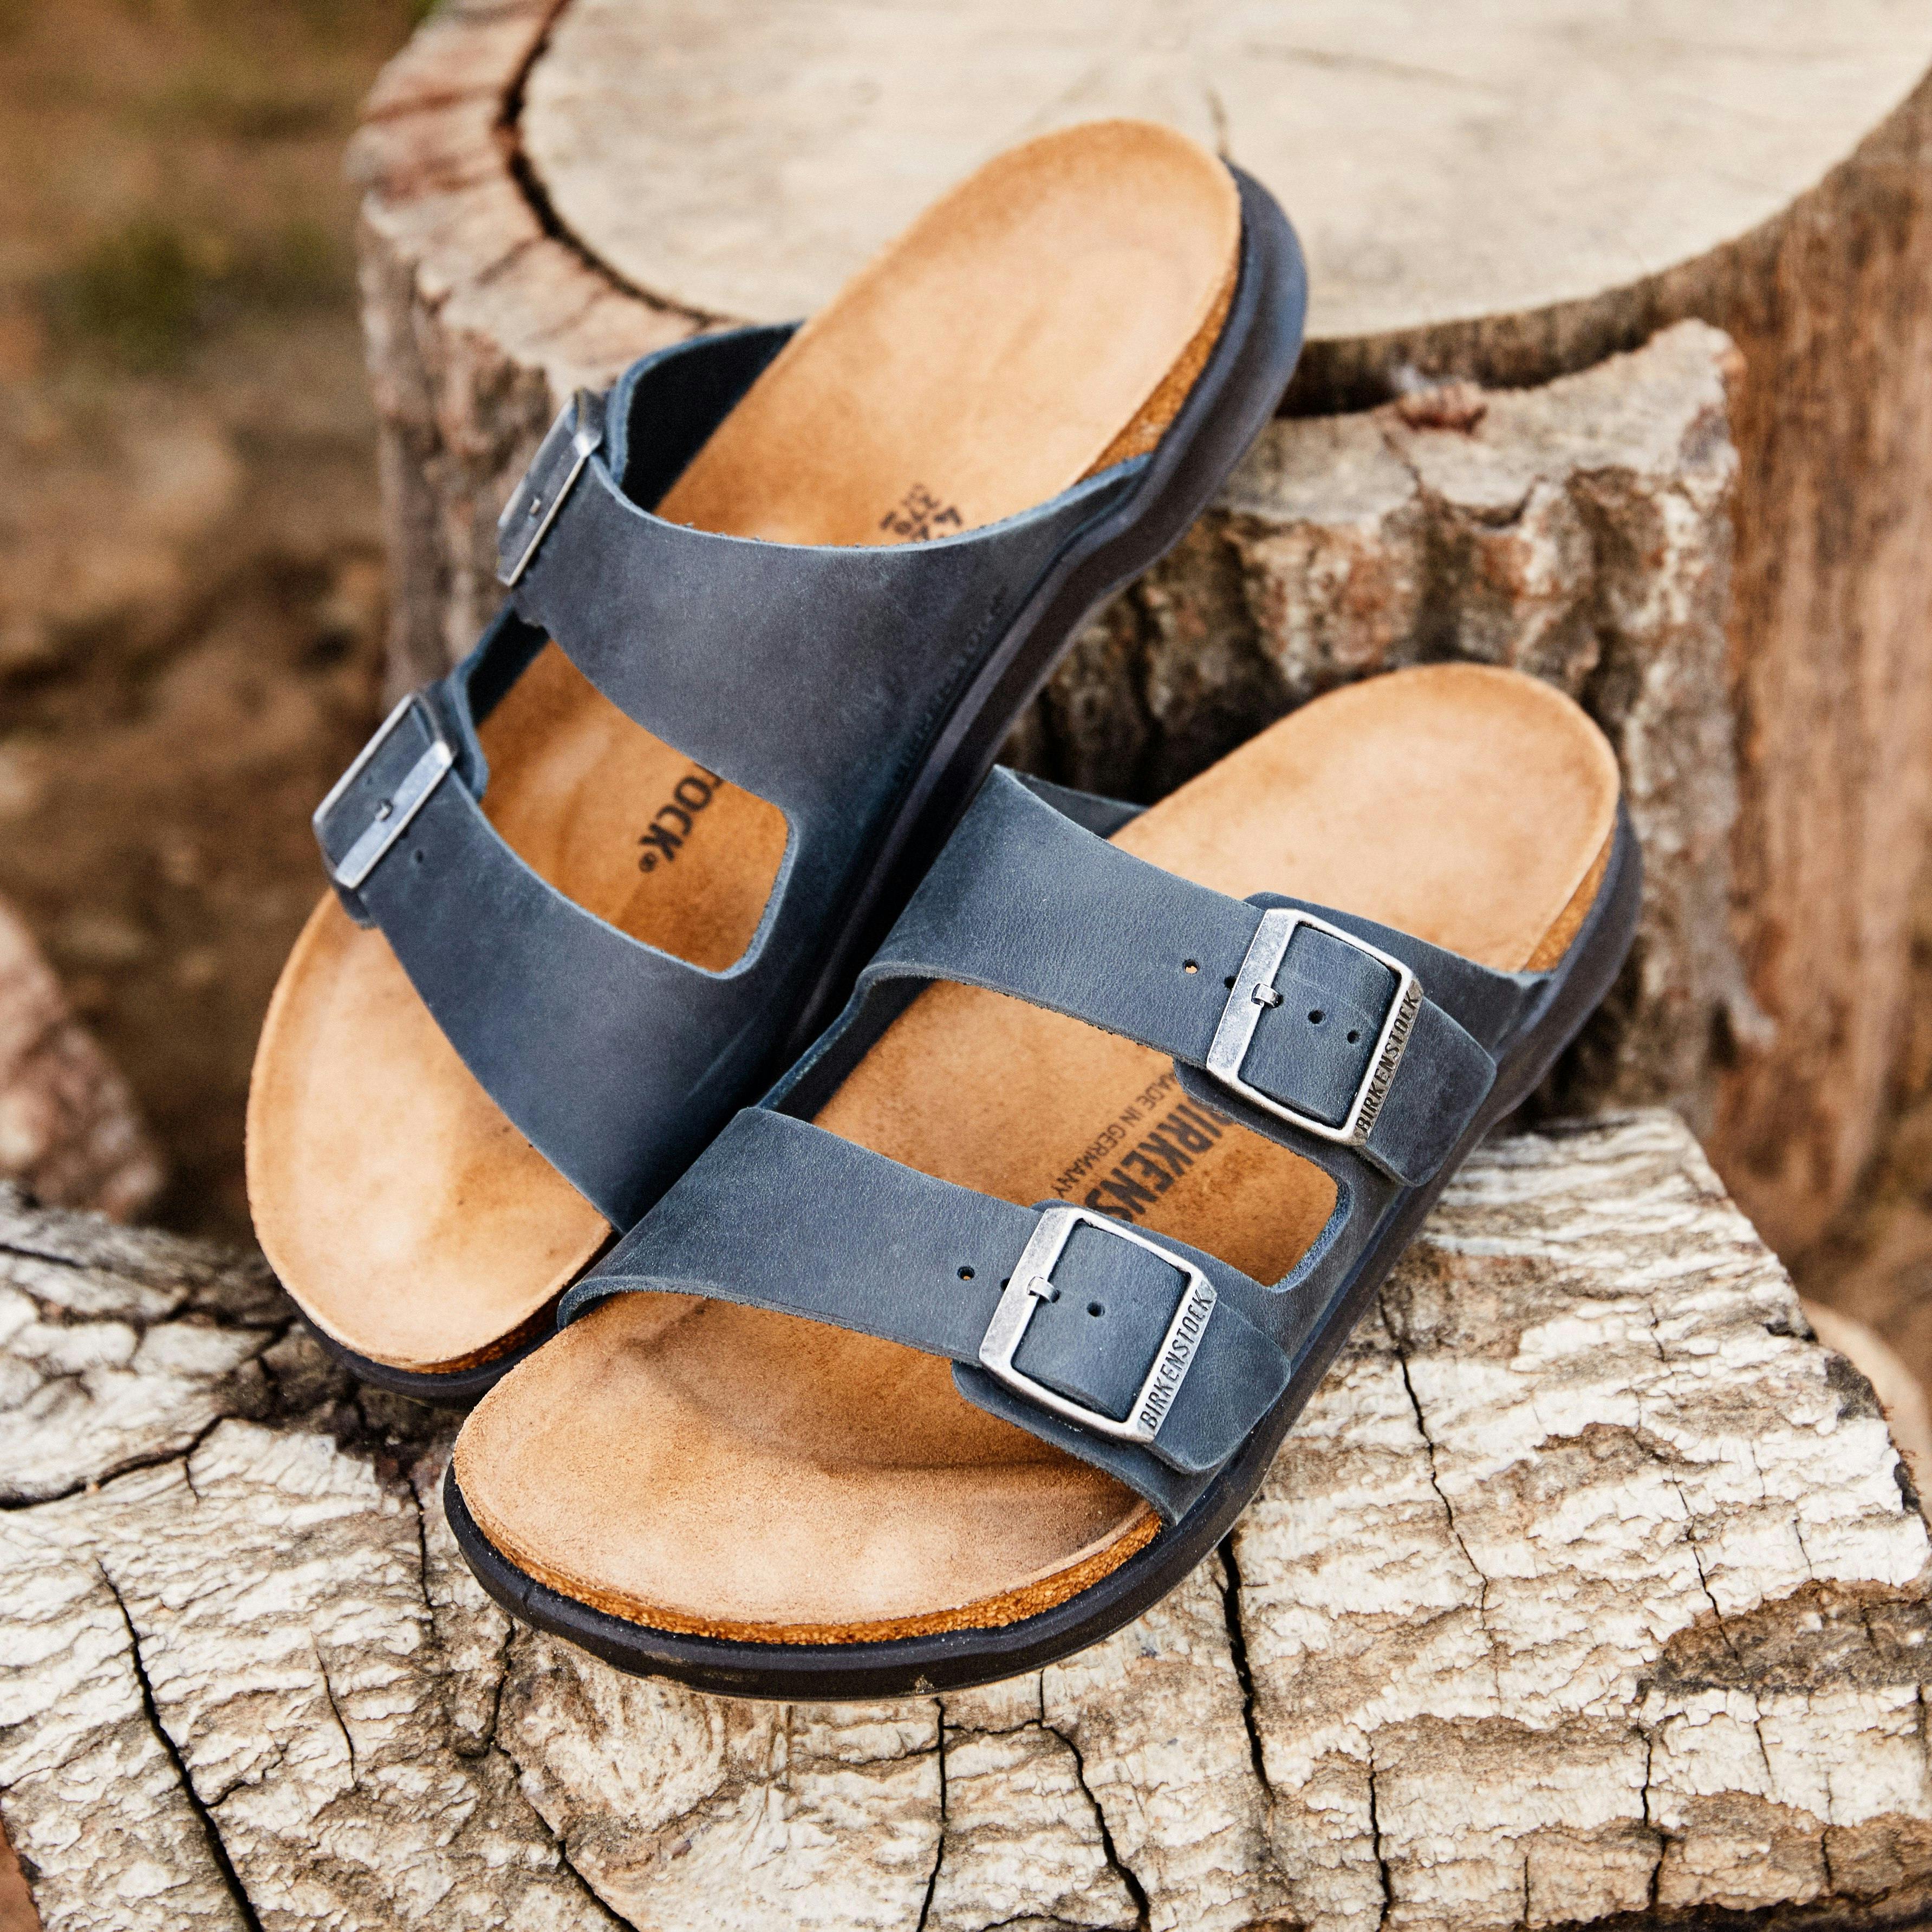 Birkenstock Men's Arizona Soft Footbed Sandals